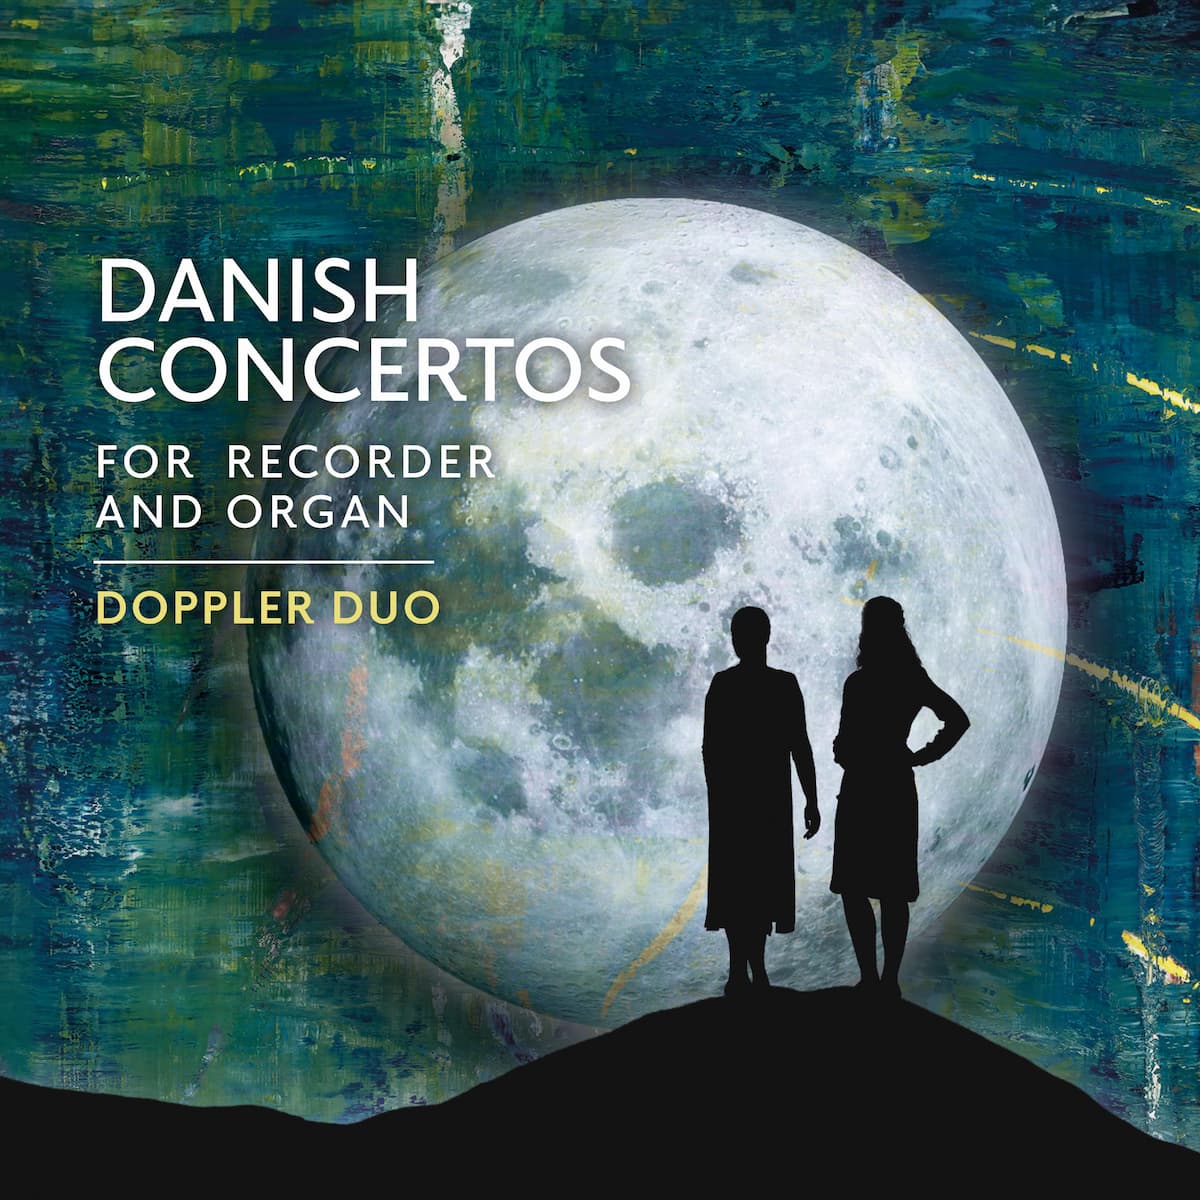 Danish Concertos for Recorder and Organ Album by Doppler Duo, Monica Schmidt Andersen, and Tina Christiansen